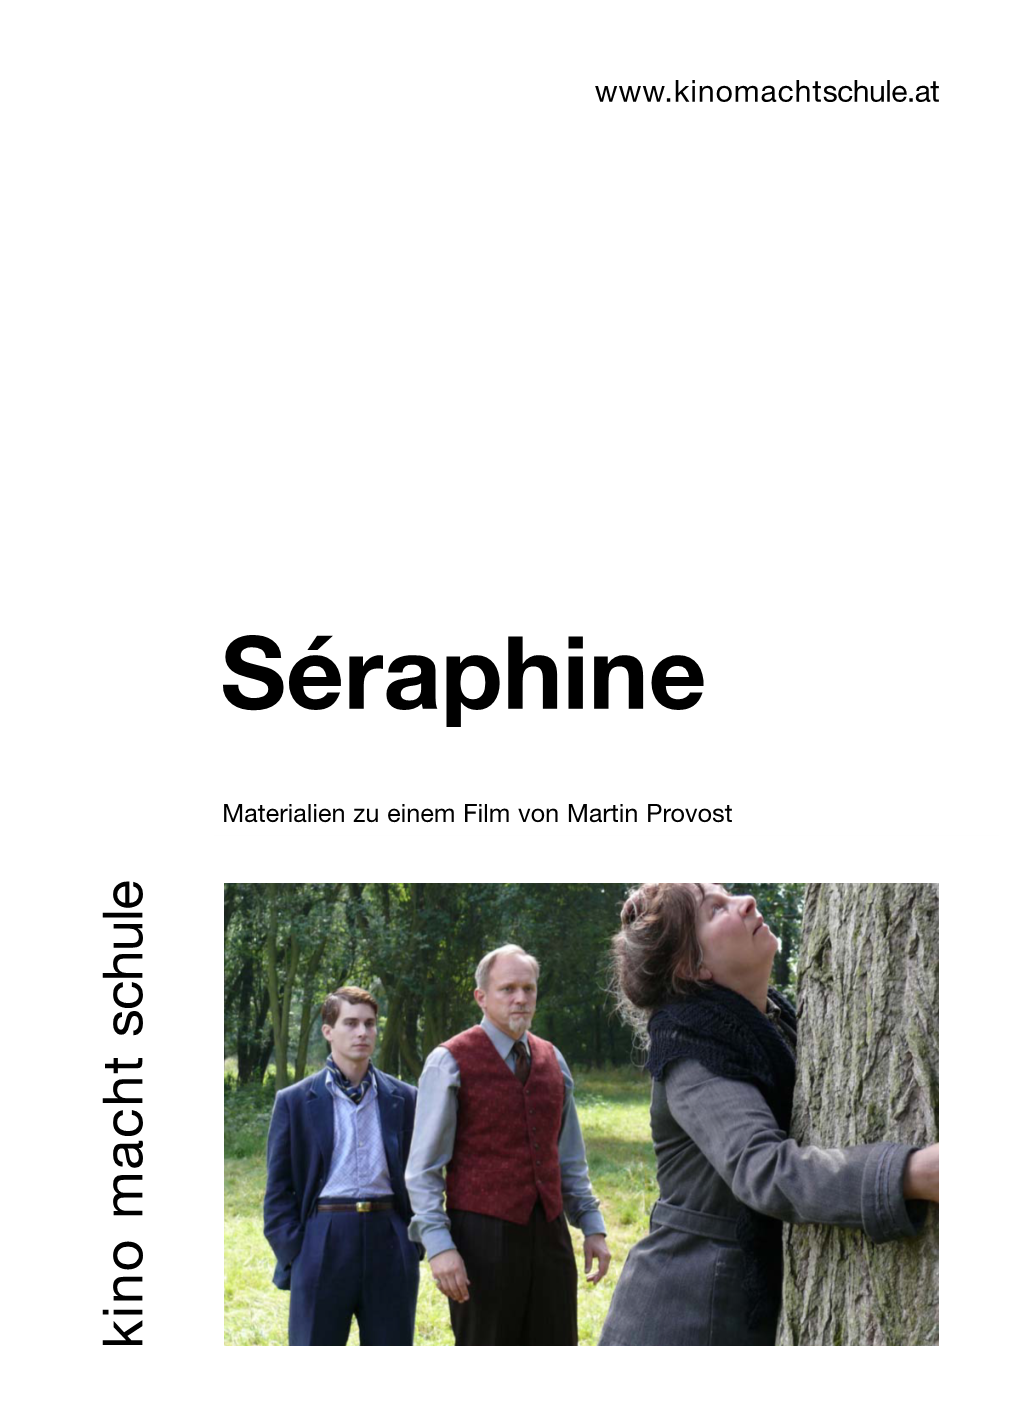 Séraphine Materialien Zu Einem Film Von Martin Provost Martin Von Film Einem Zu Materialien Schule.At KINO Macht SCHULE